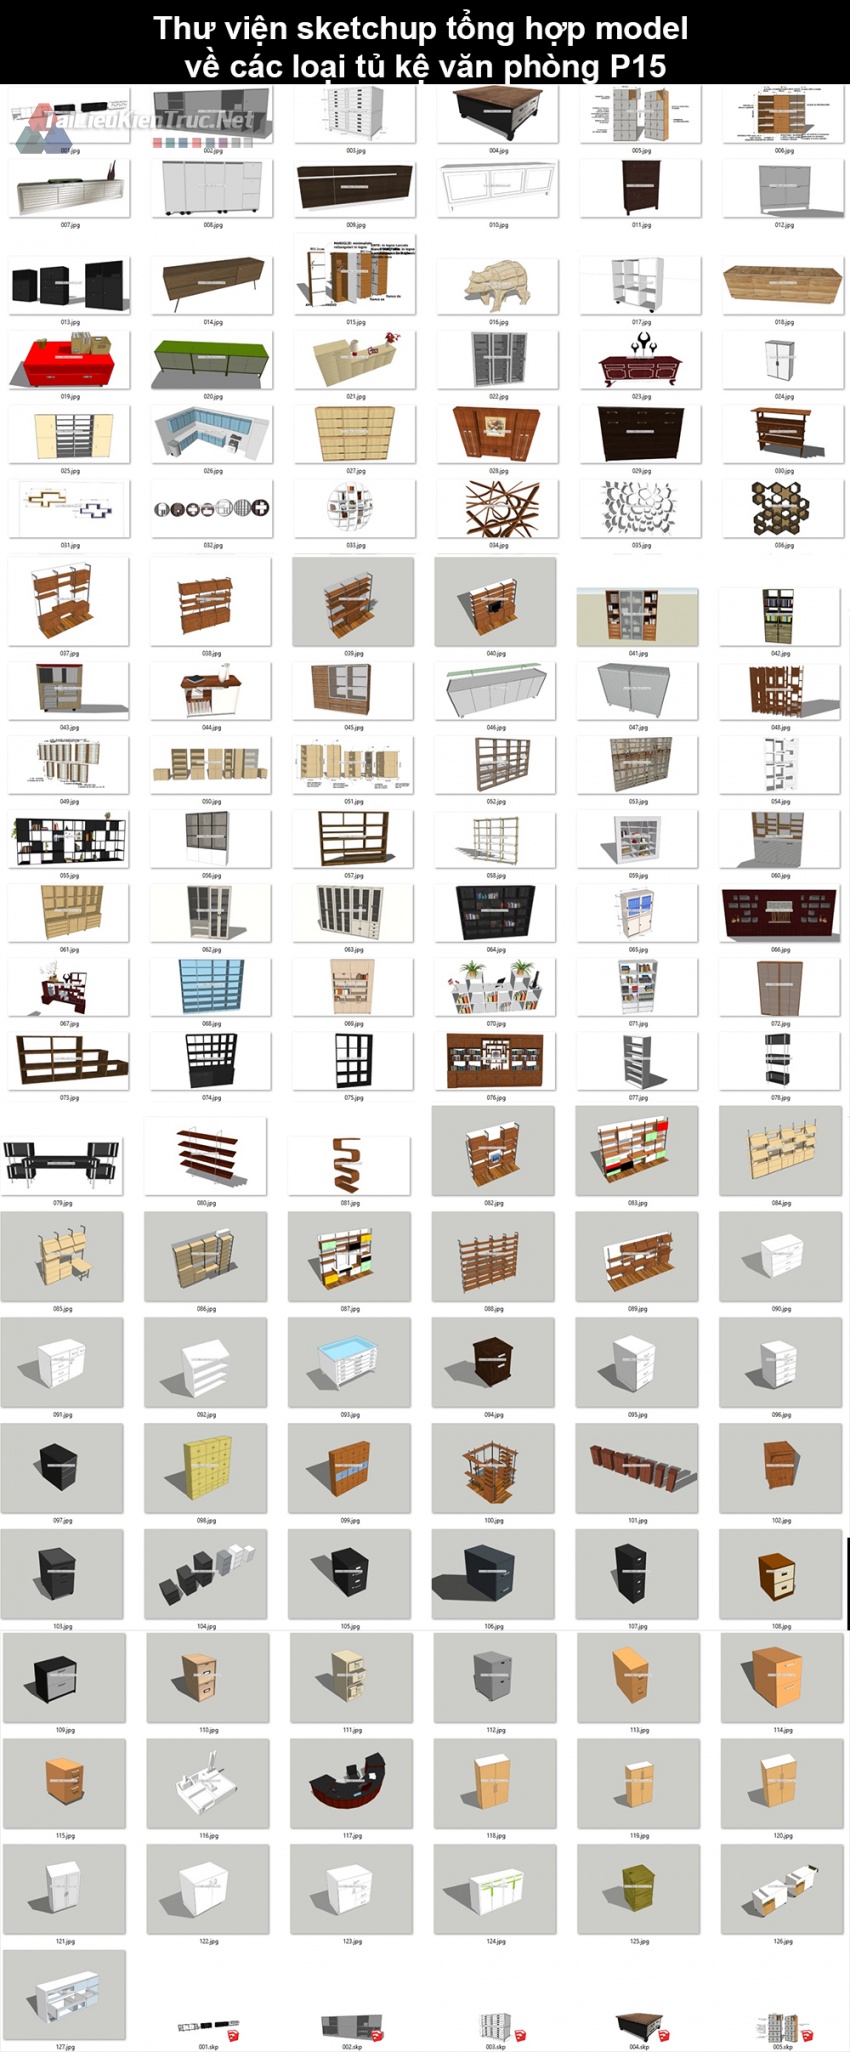 Thư viện sketchup tổng hợp model về các loại Tủ, kệ văn phòng P15